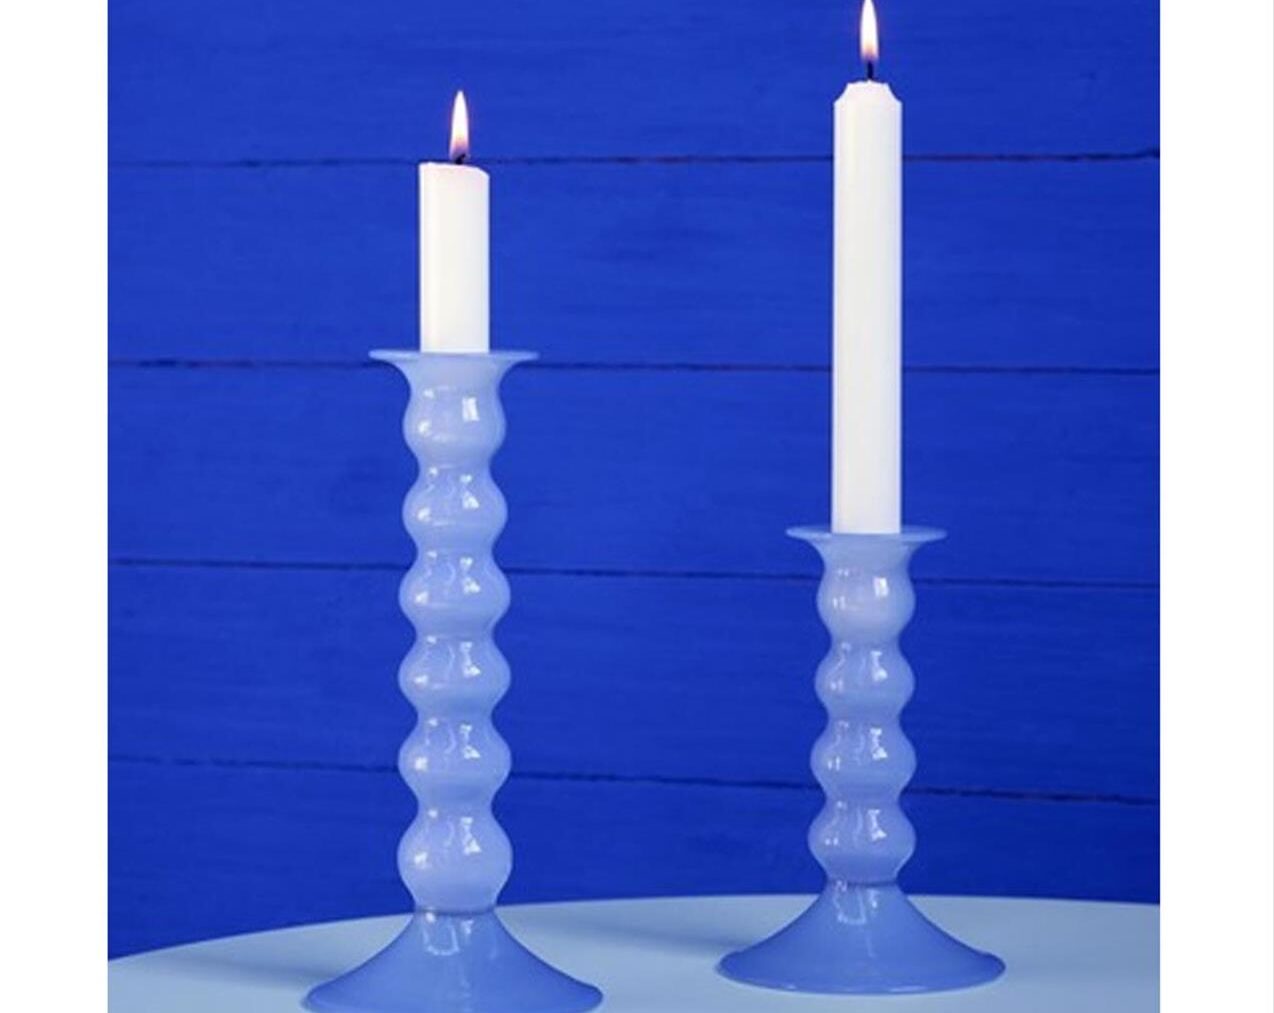 Wavy-Candleholder-Medium-Jade-Light-Blue